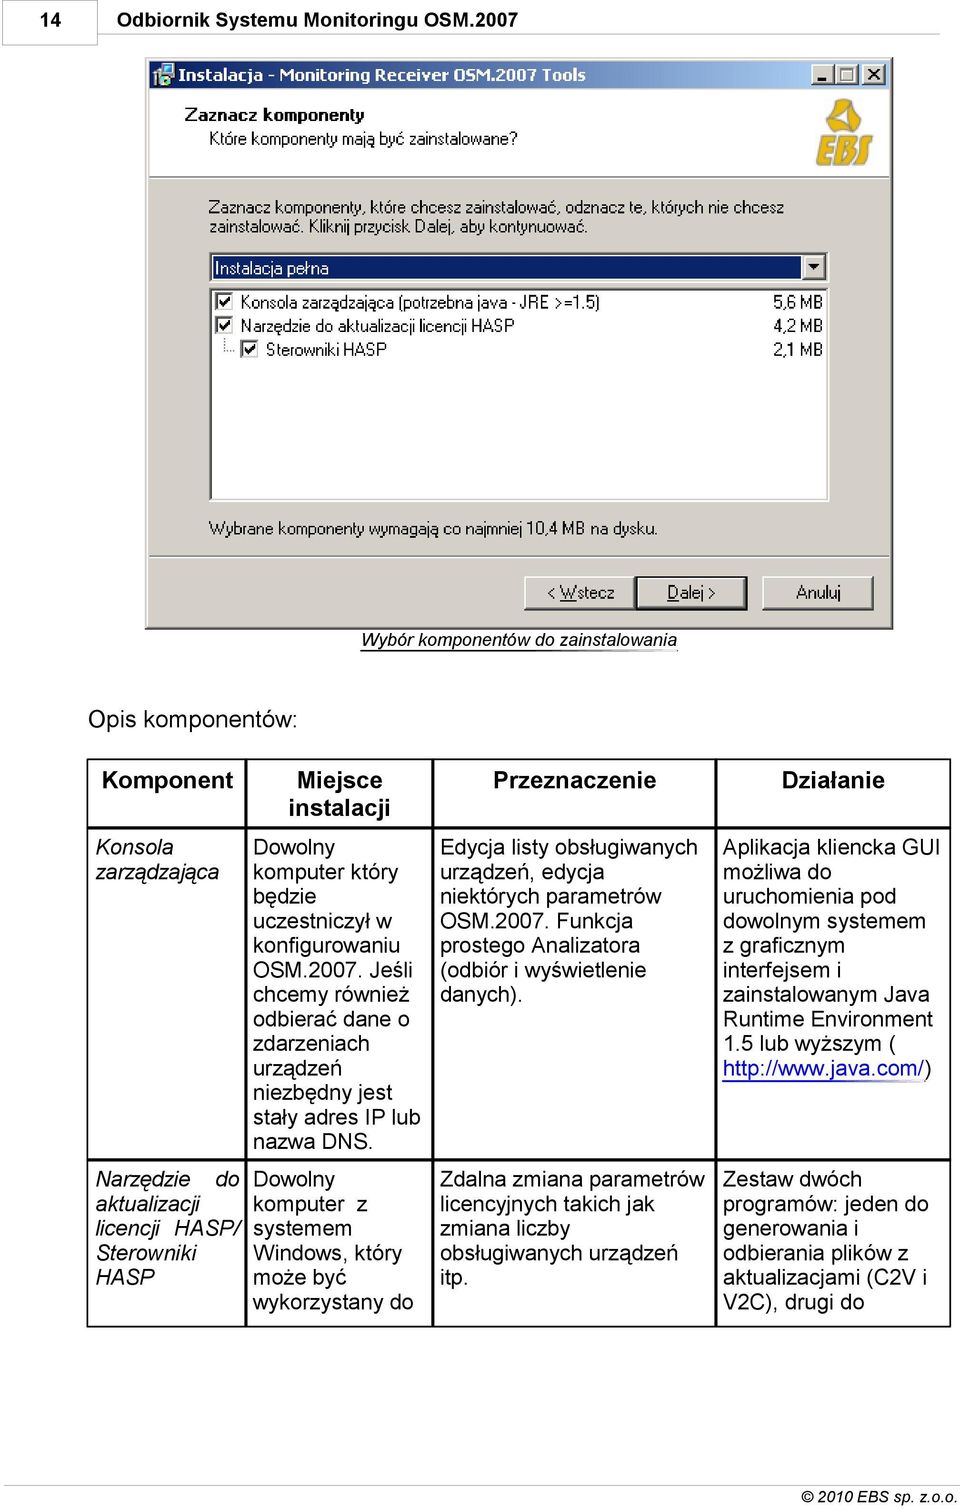 2007. Jeśli chcemy również odbierać dane o zdarzeniach urządzeń niezbędny jest stały adres IP lub nazwa DNS. Edycja listy obsługiwanych urządzeń, edycja niektórych parametrów OSM.2007. Funkcja prostego Analizatora (odbiór i wyświetlenie danych).